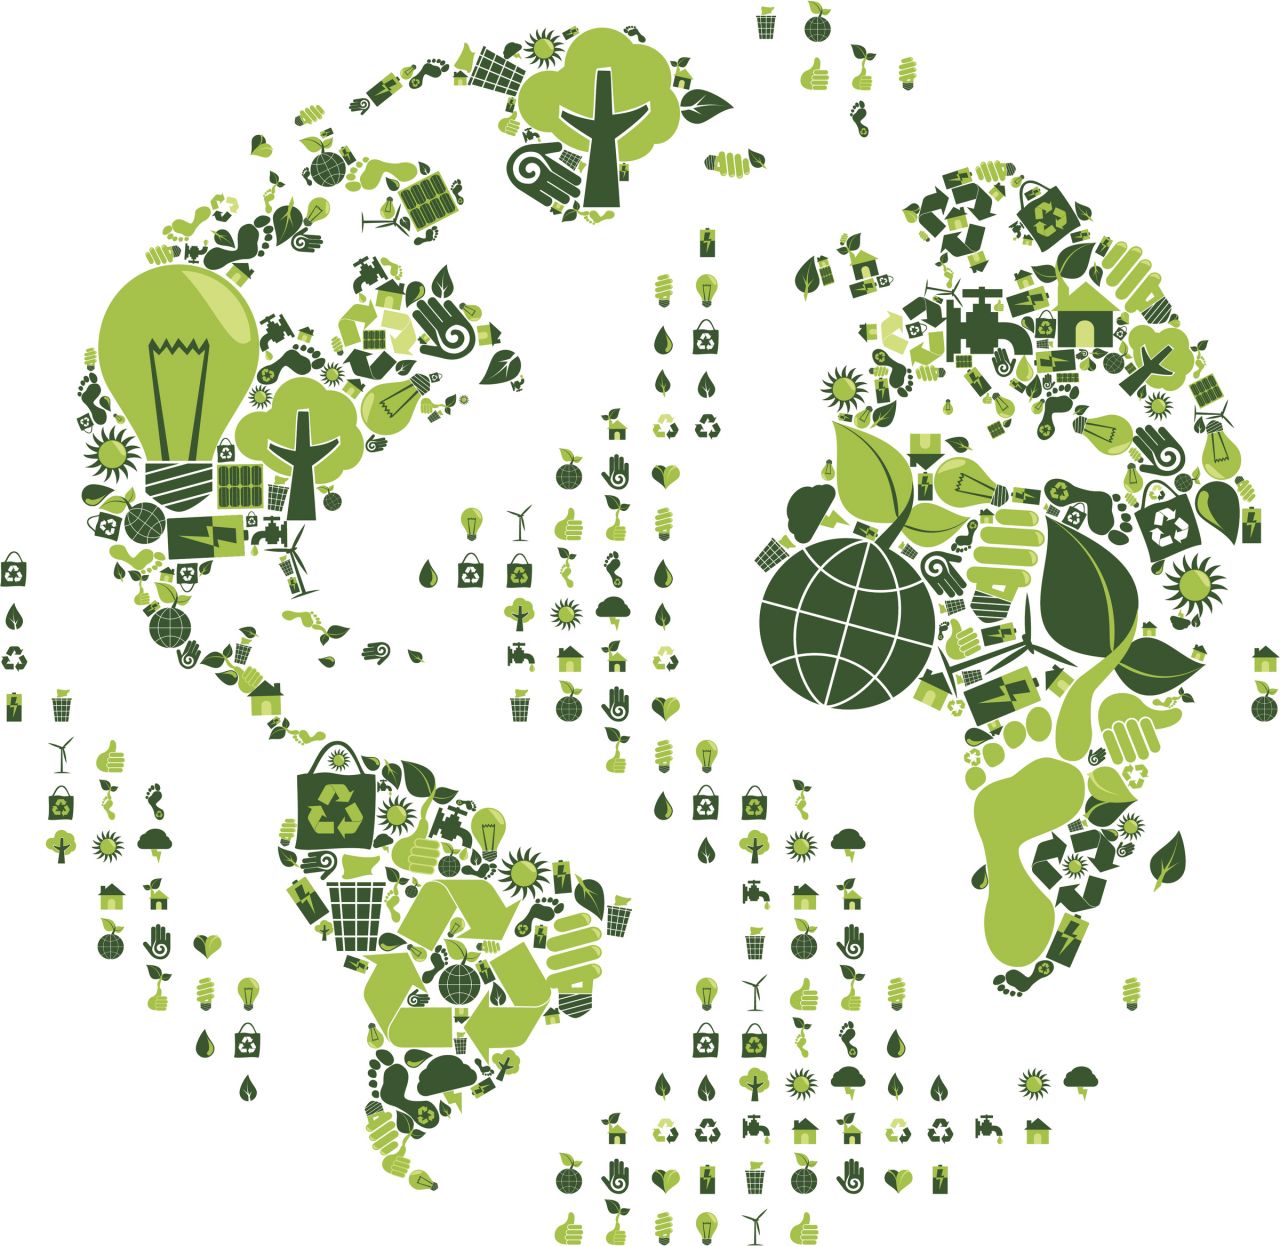 6 mois après la COP21 : comment faire rimer économie avec écologie